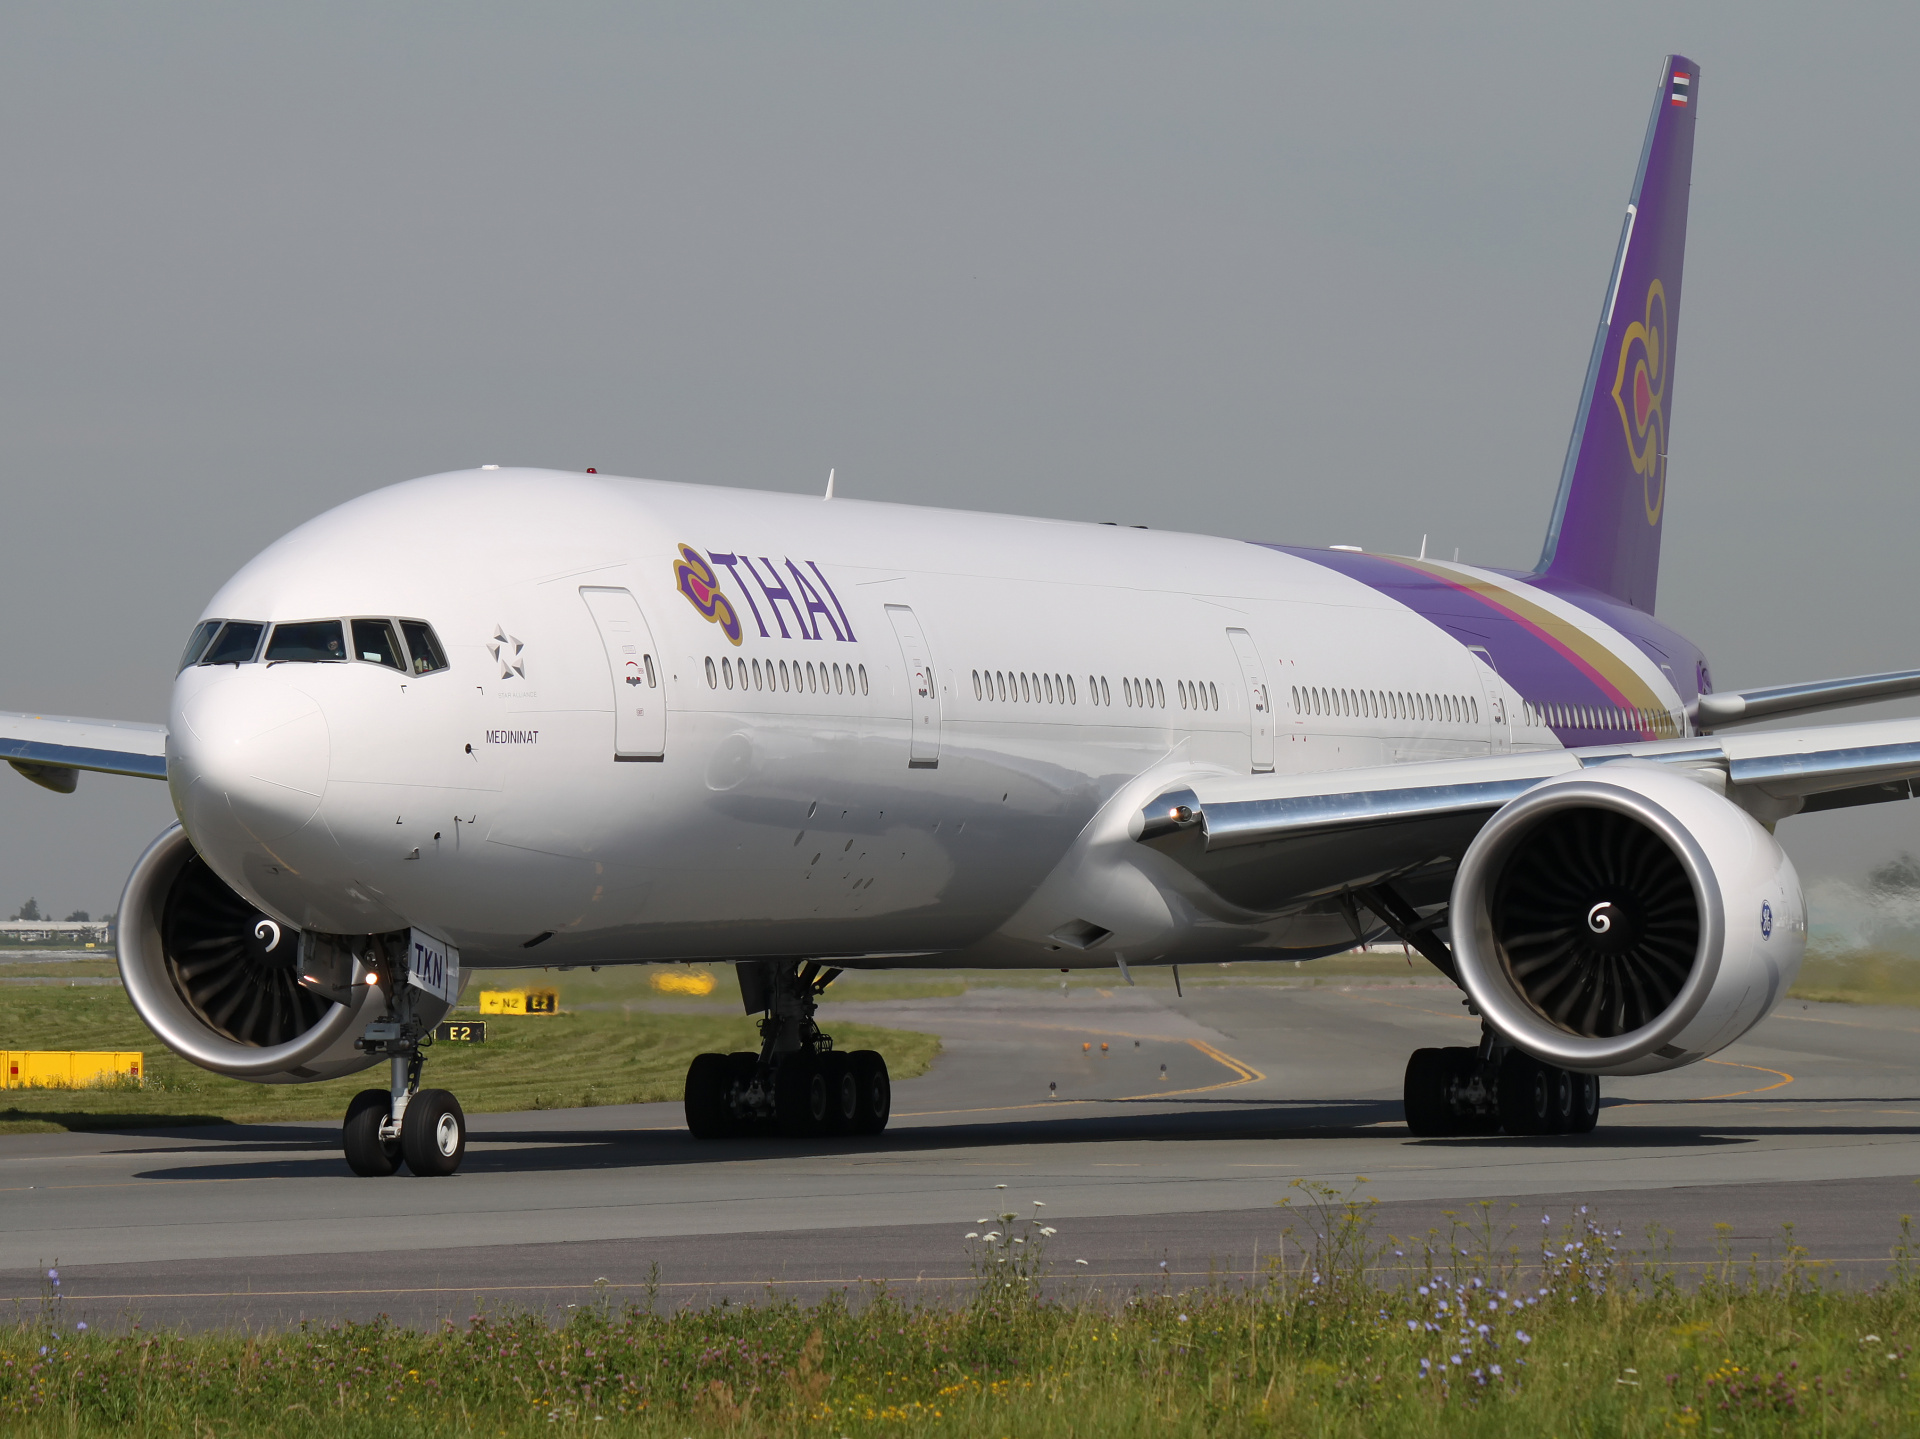 HS-TKN (Samoloty » Spotting na EPWA » Boeing 777-300ER » Thai Airlines)